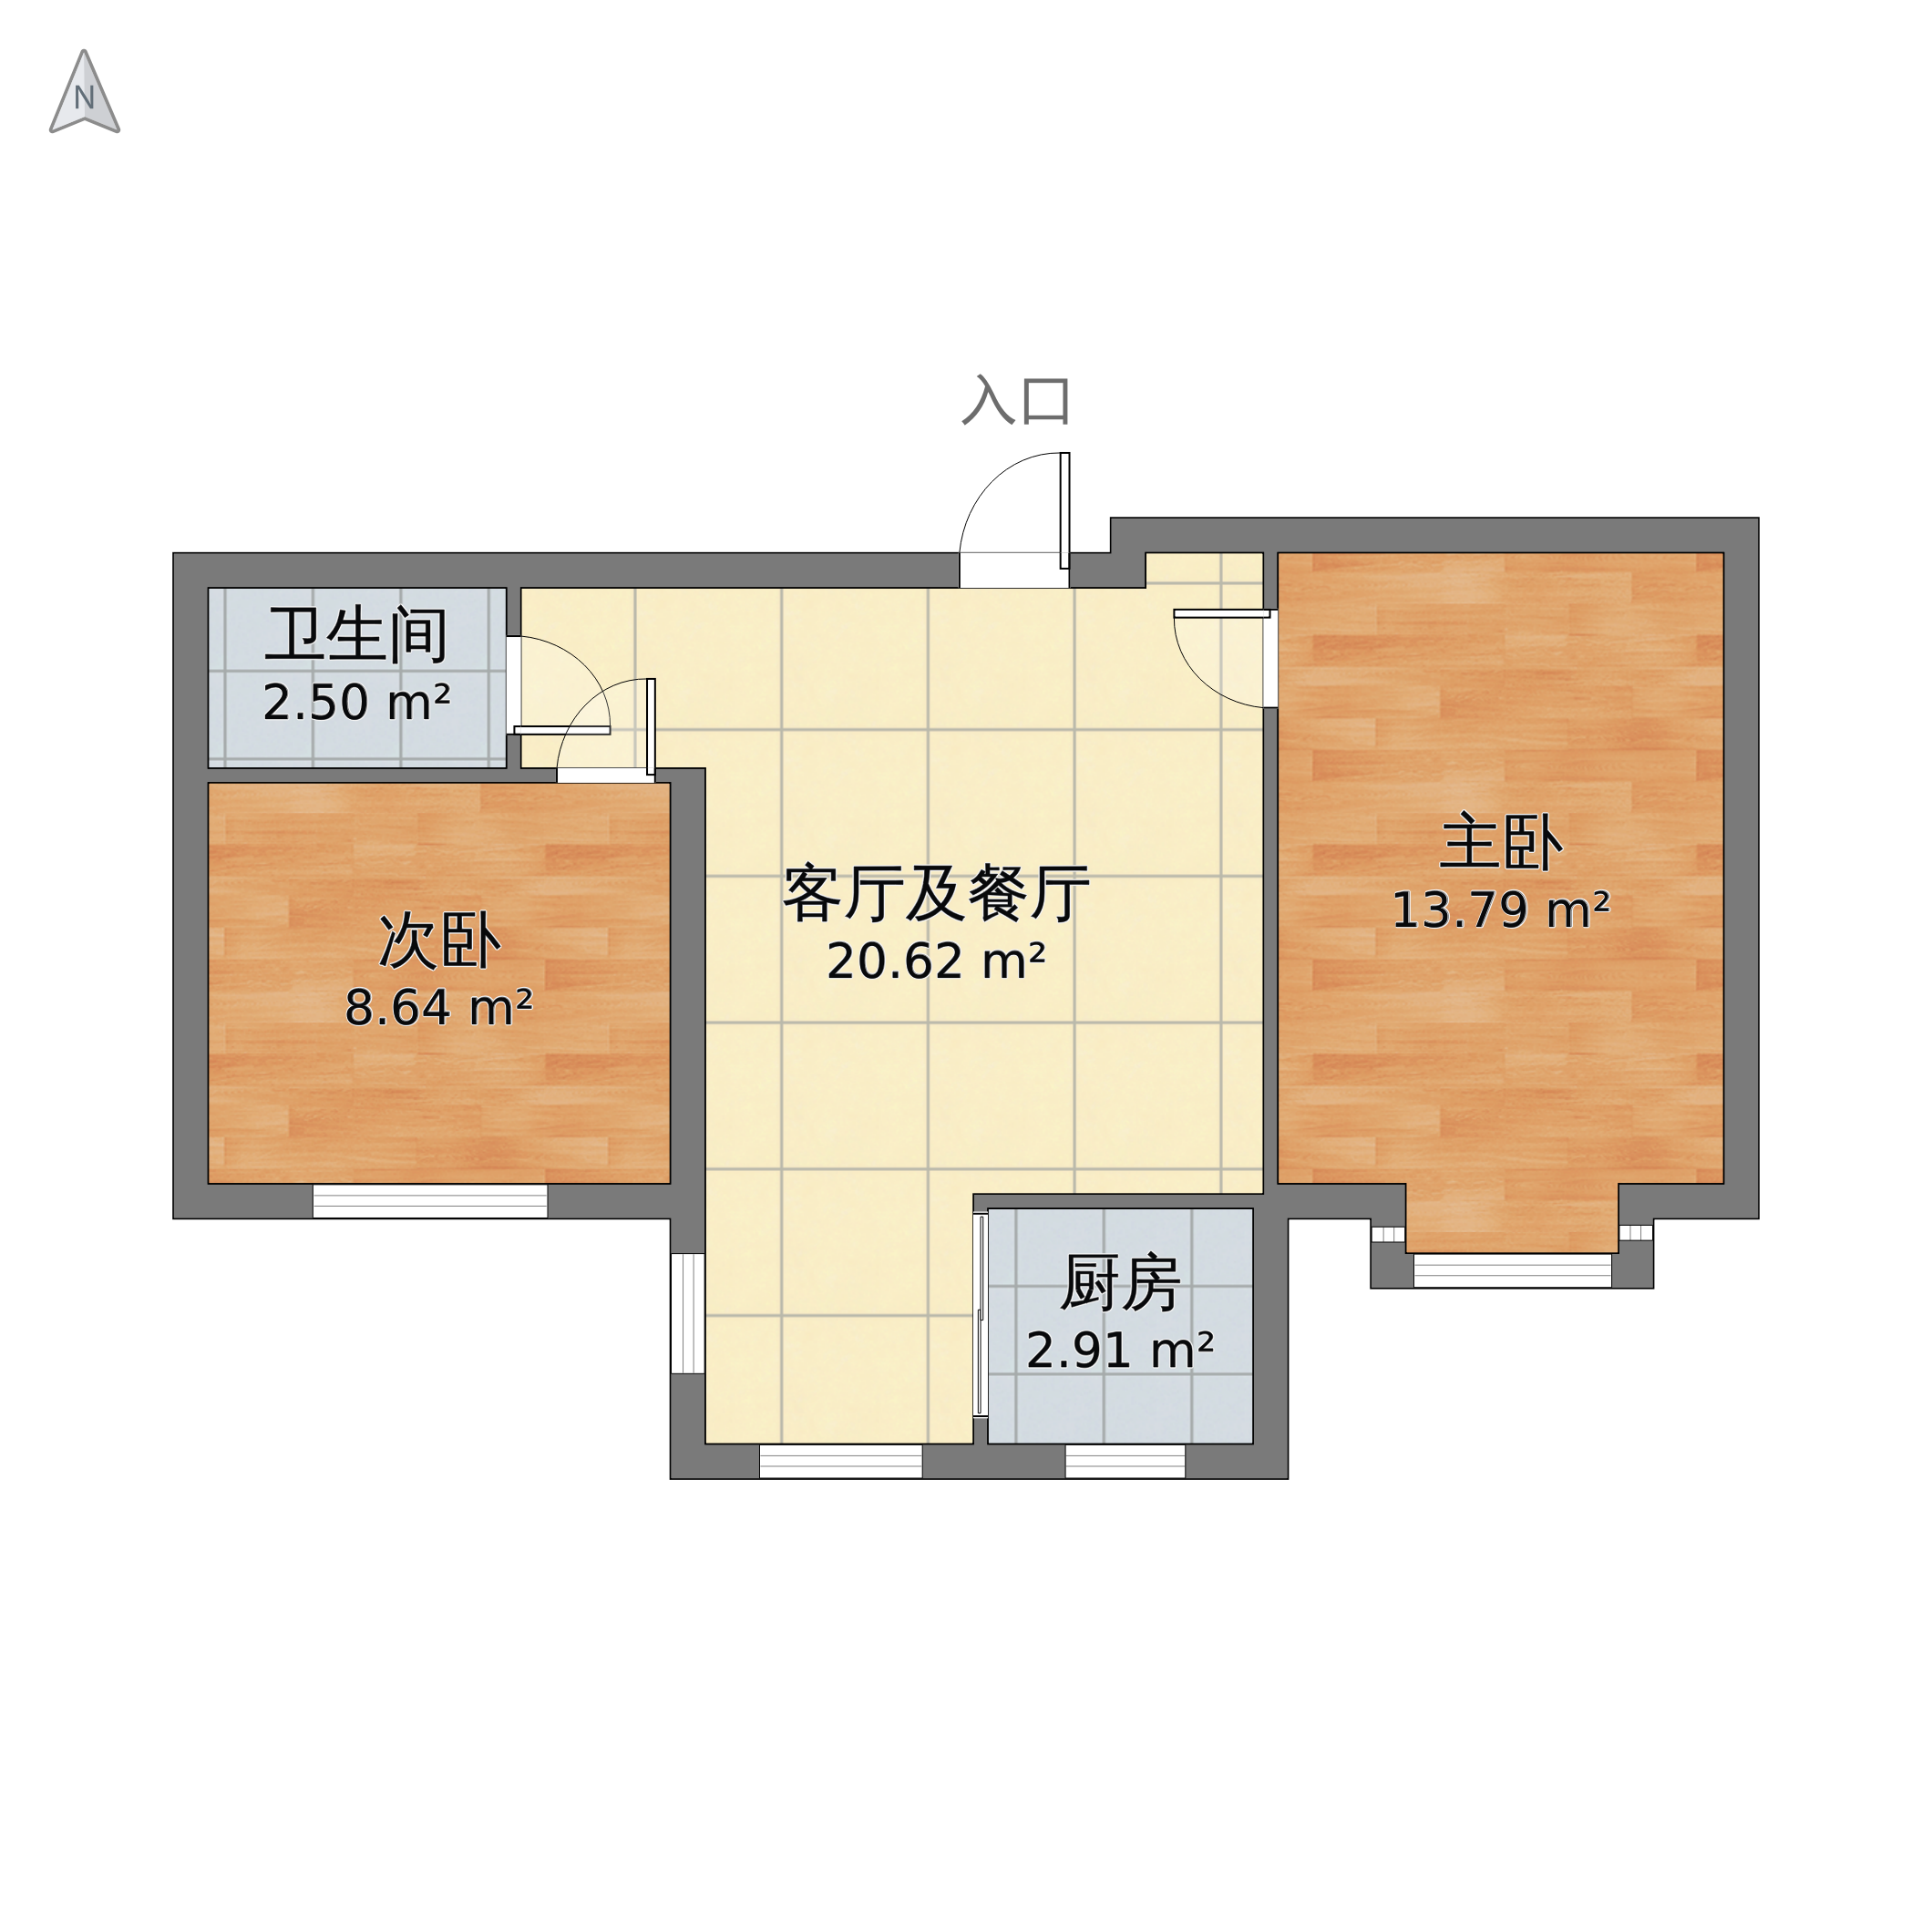 北京市朝阳区 朝阳文化广场22室1厅1卫 54m05